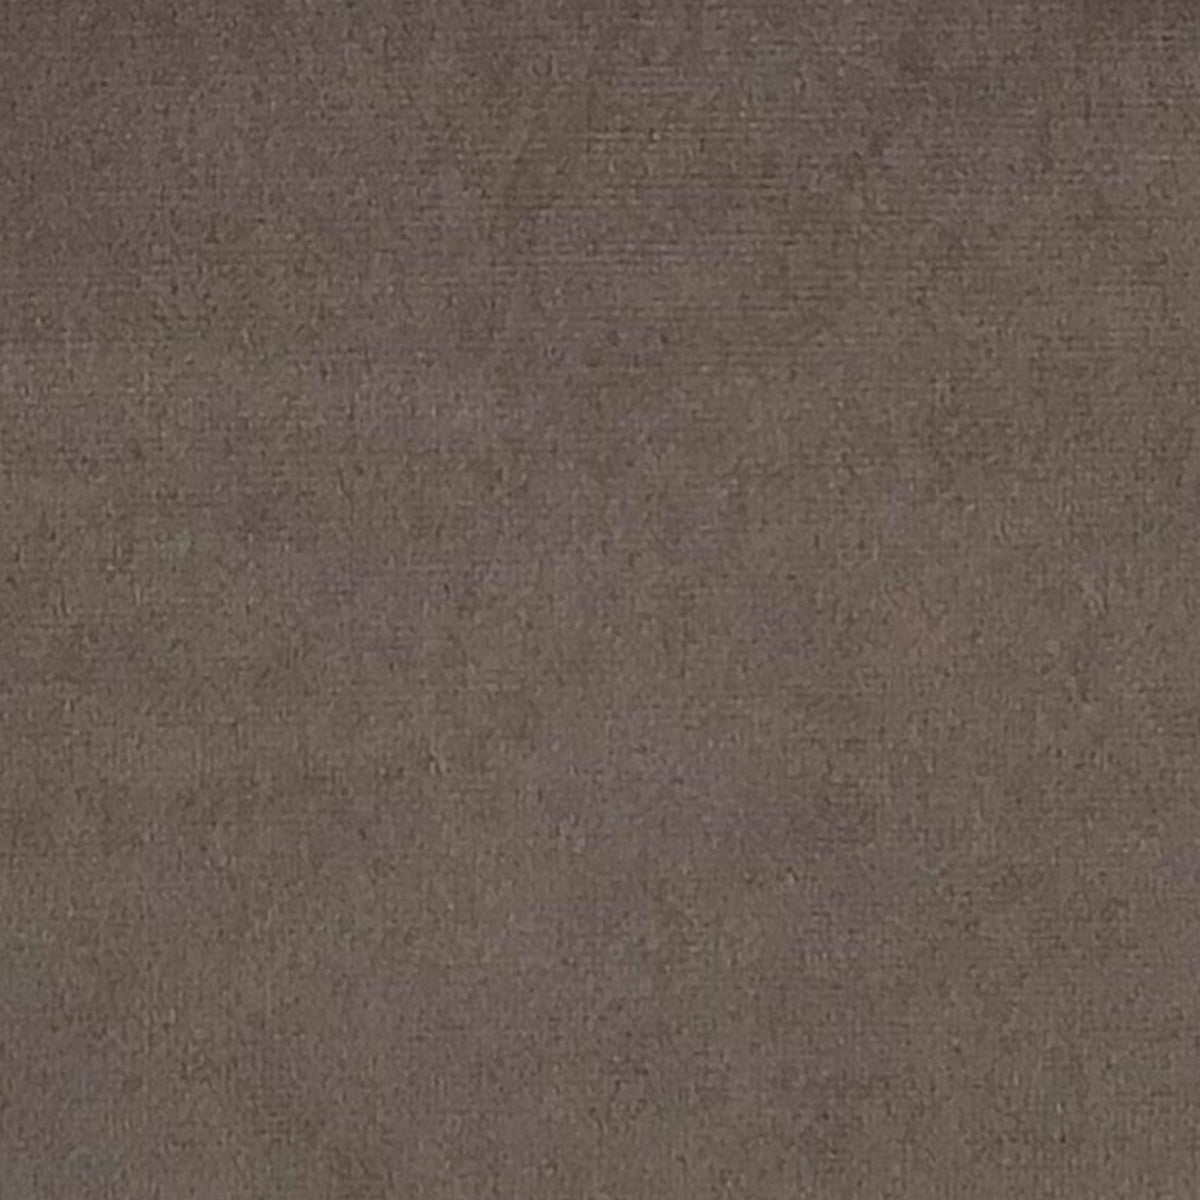 Purchase 992181 | Venus Velvet, Sand - Schumacher Fabric